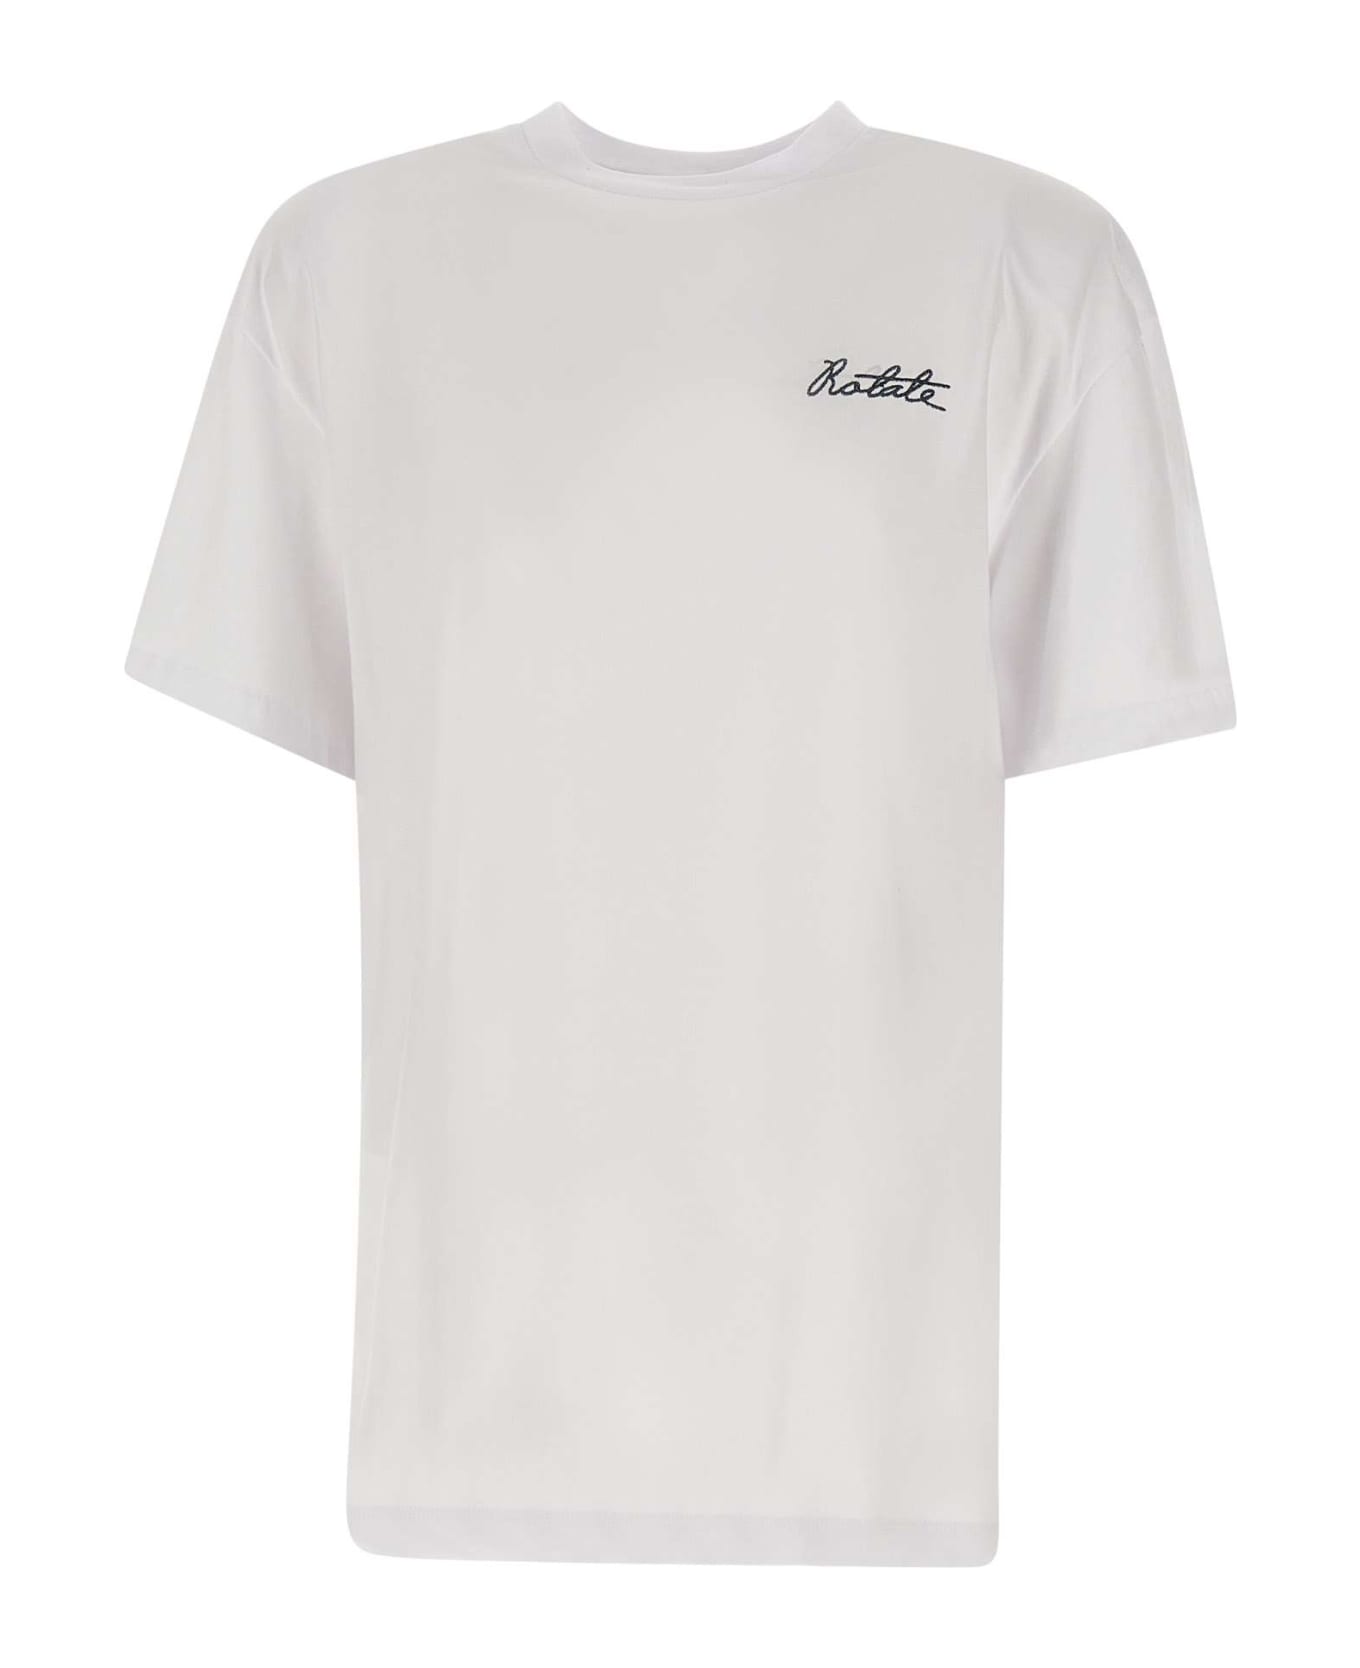 Rotate by Birger Christensen "graddy" Cotton T-shirt - WHITE